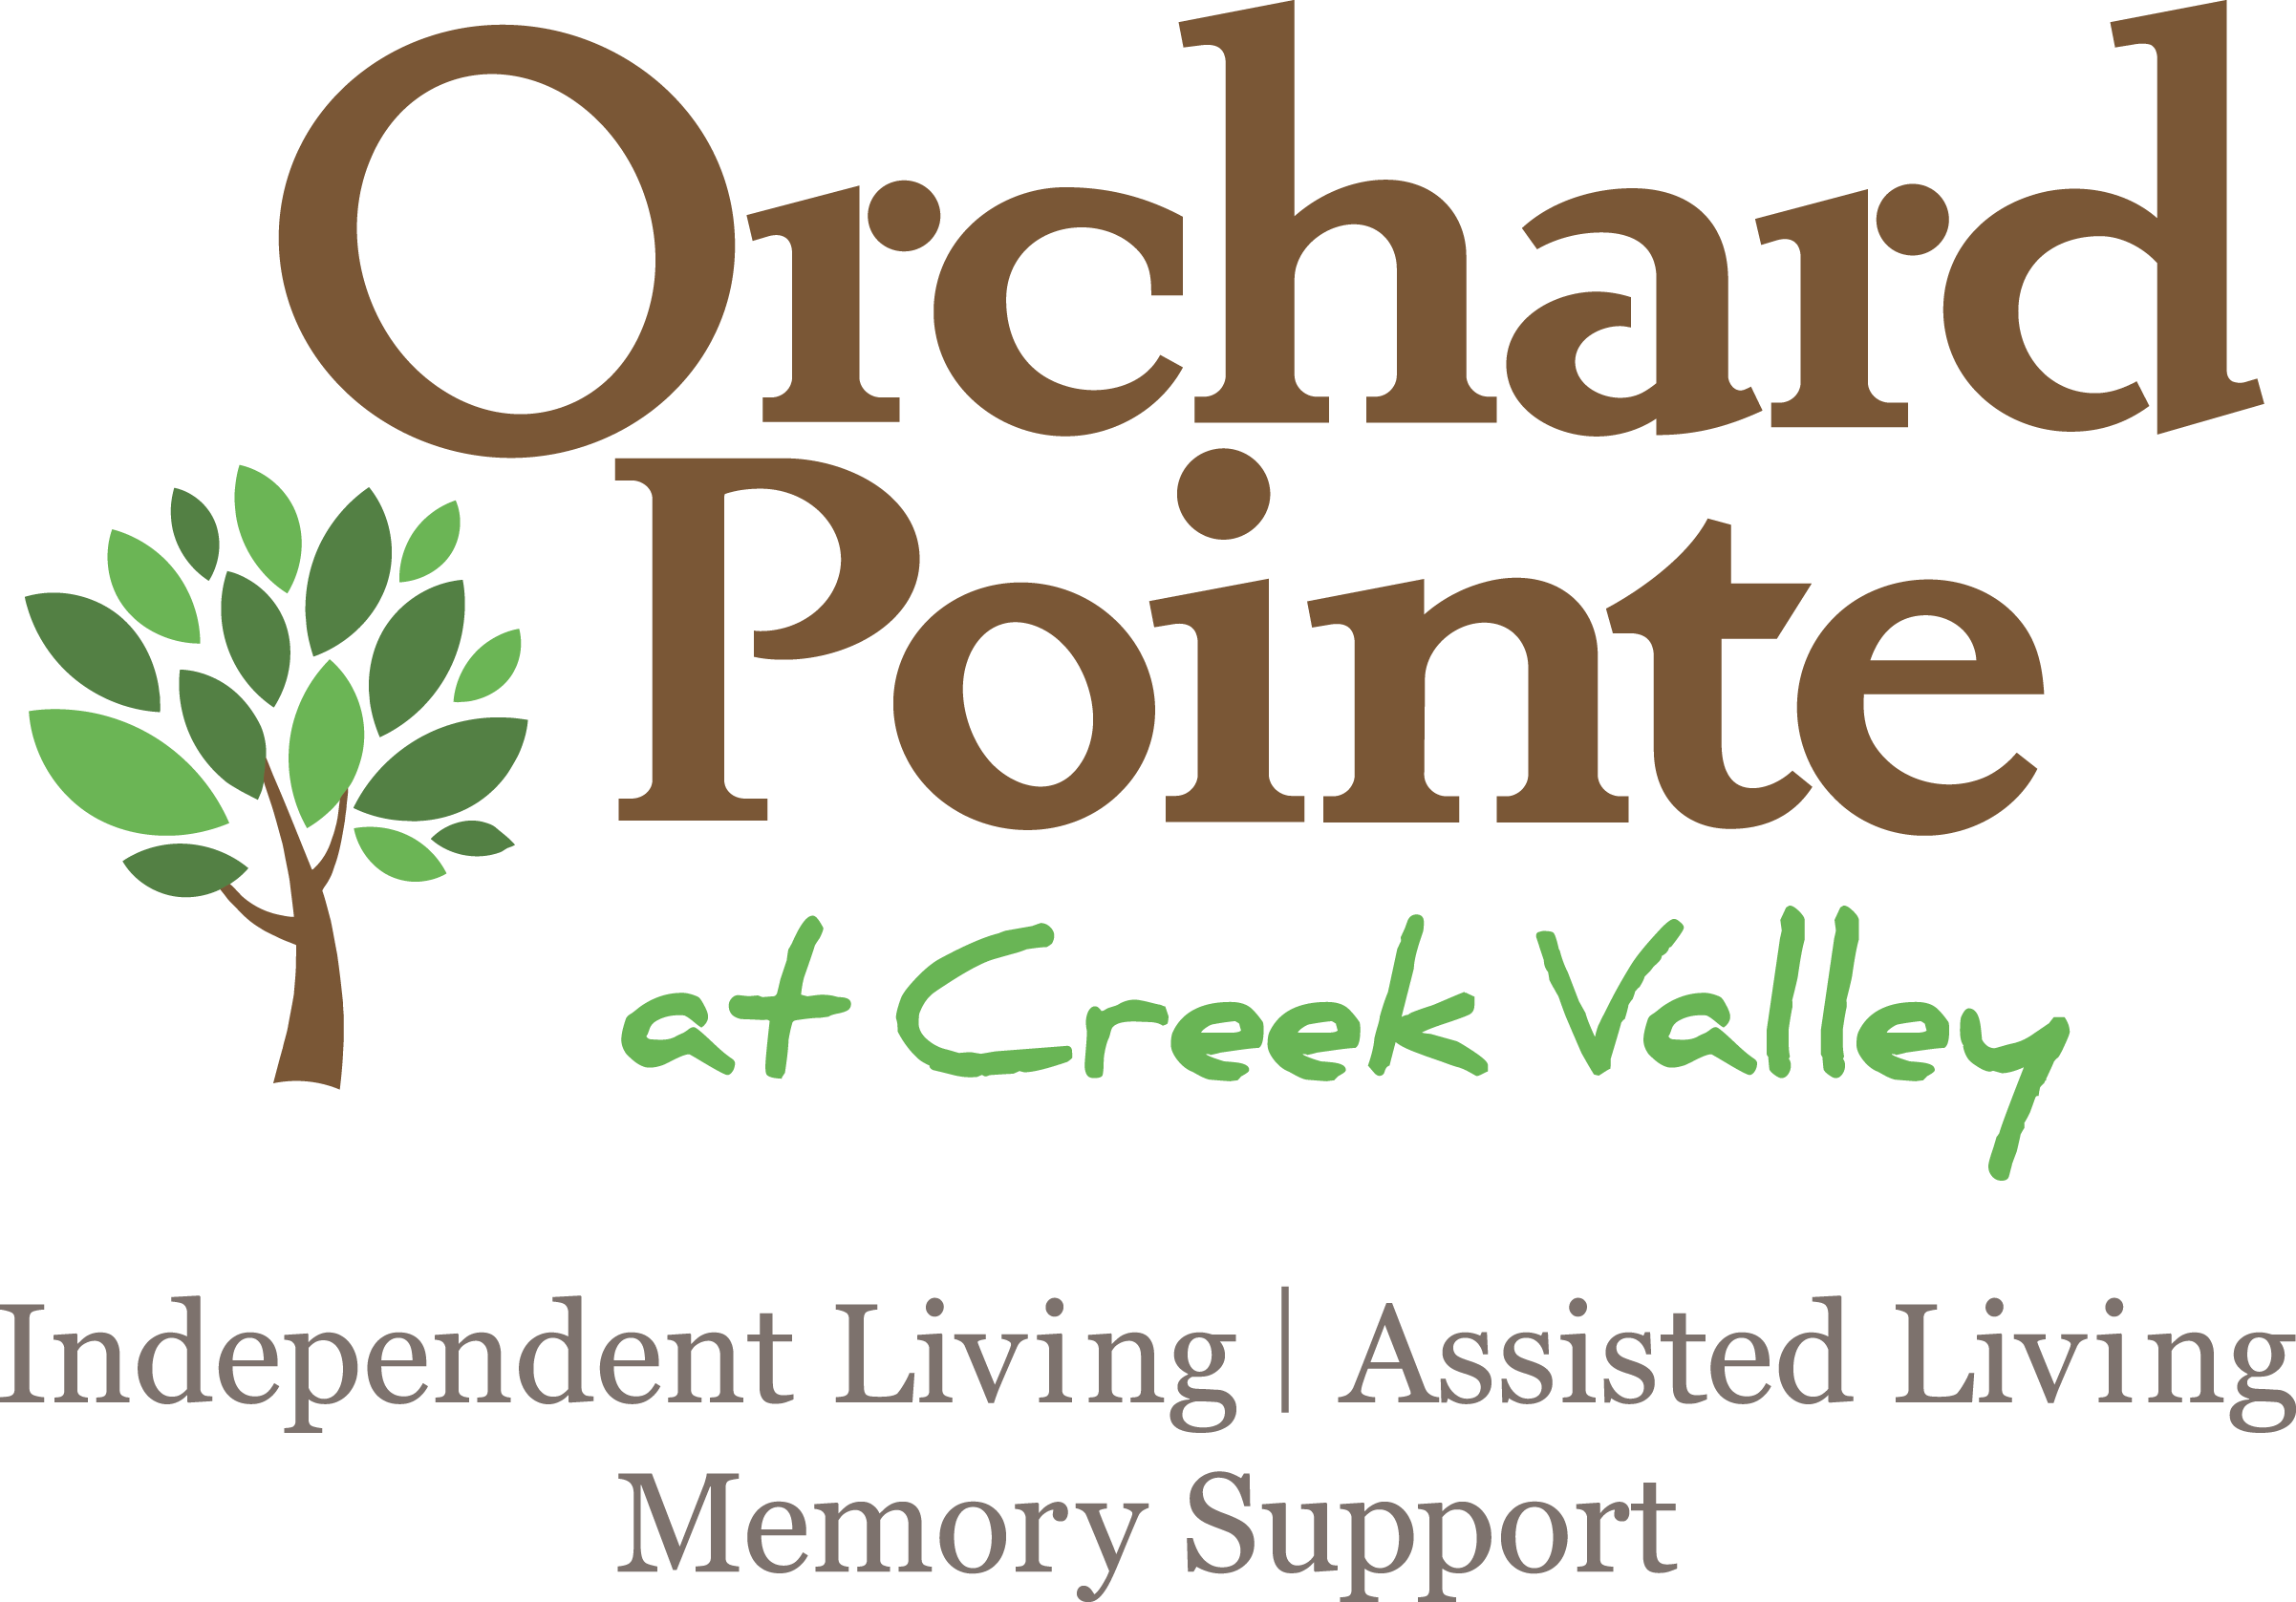 E. Orchard Pointe en Creek Valley